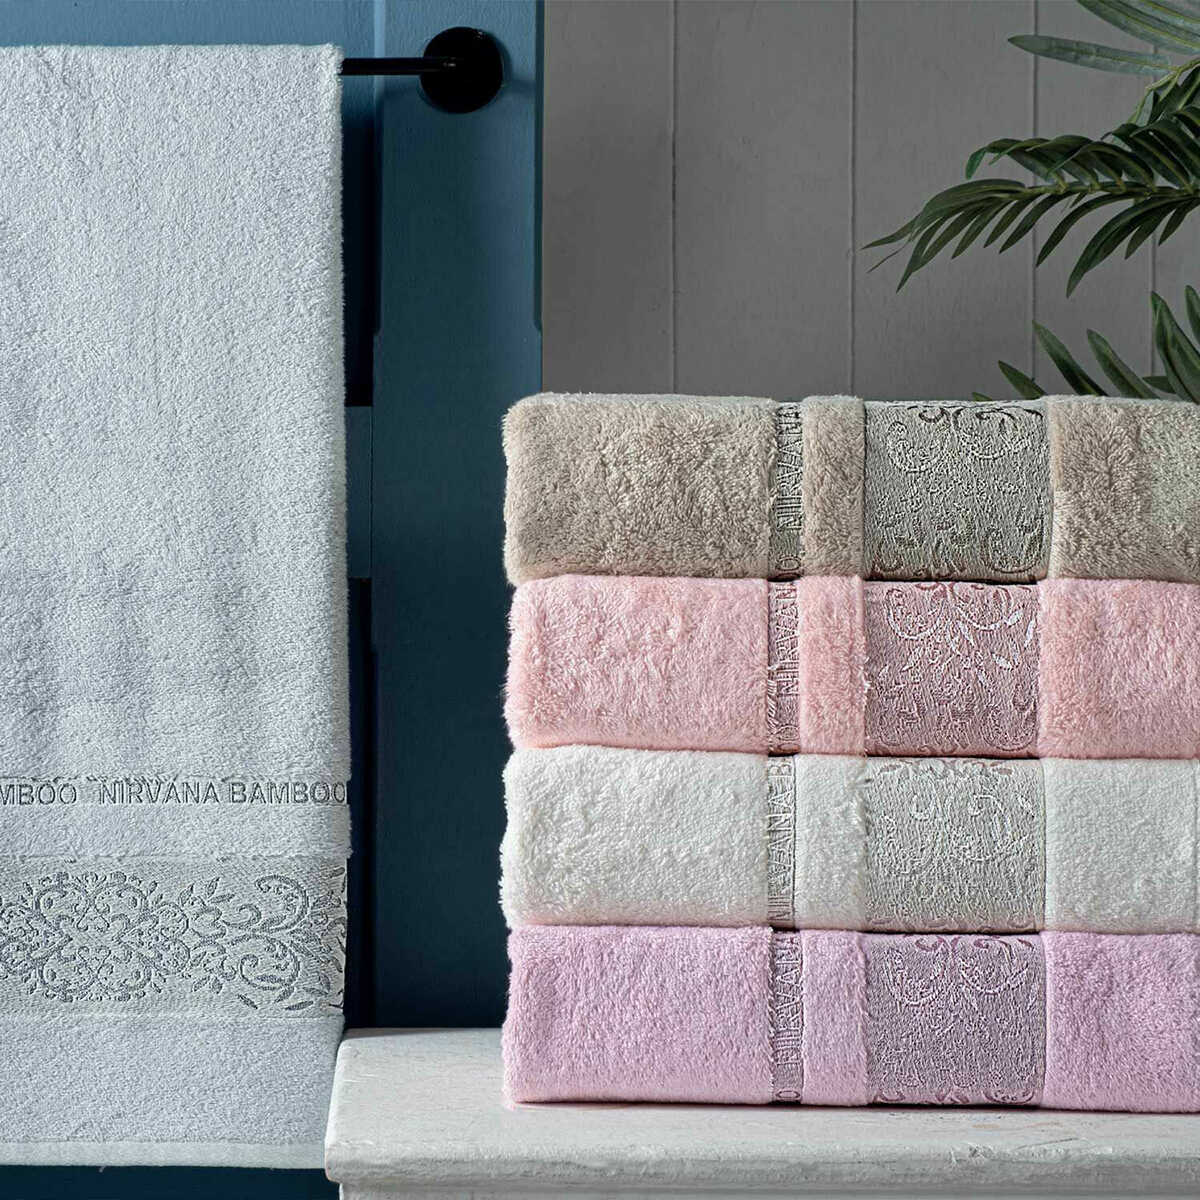 Maxstyle Nirvana Bamboo Gray Towel 50X90 cm